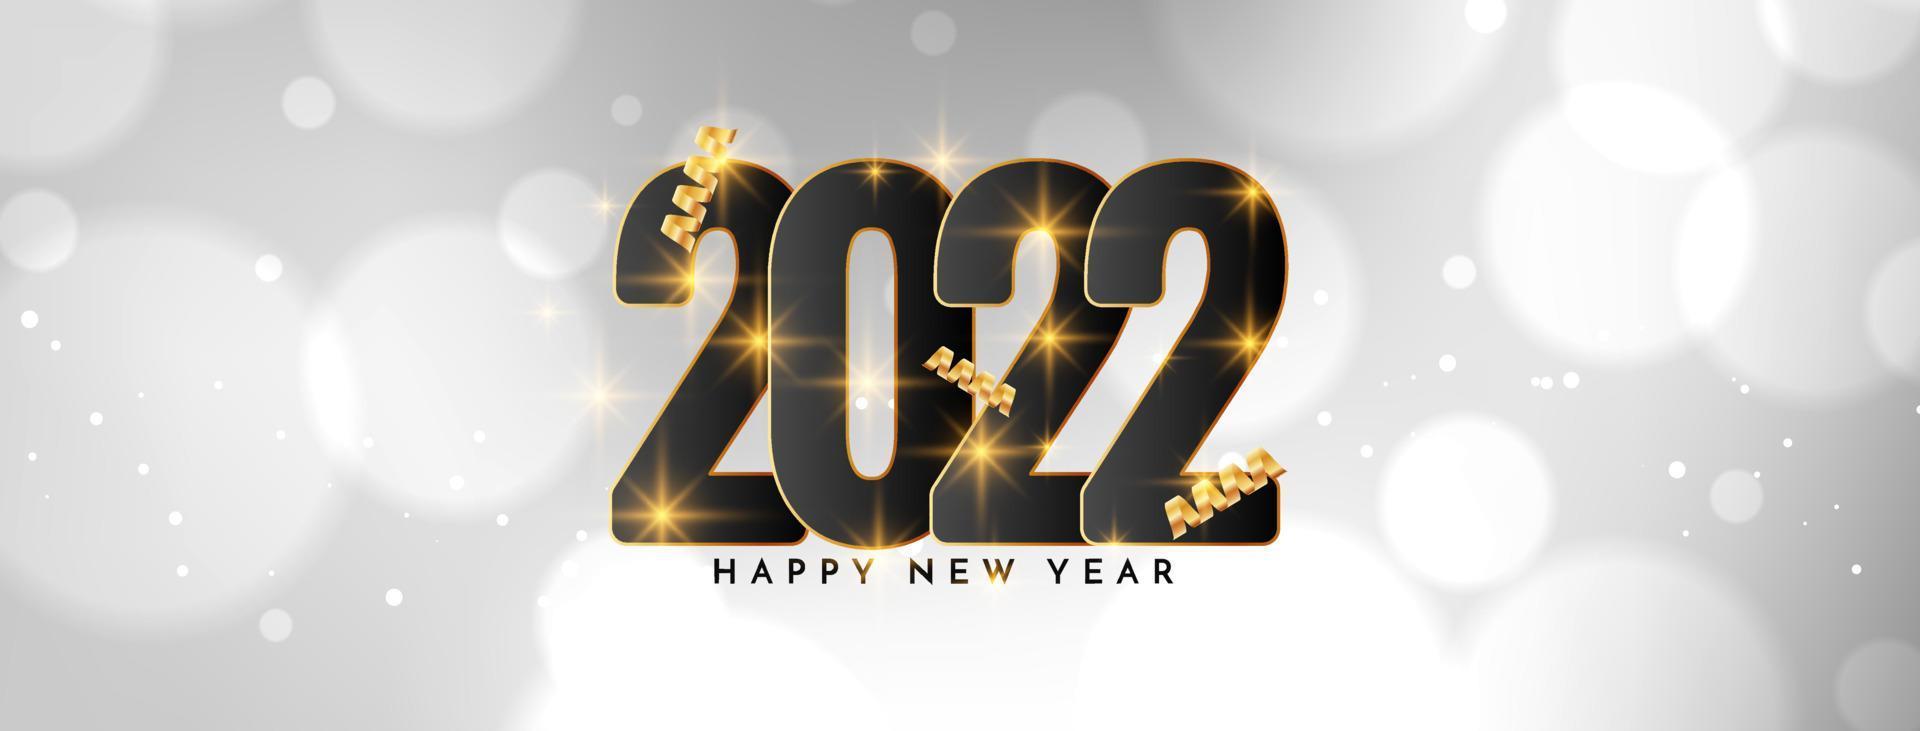 felice anno nuovo 2022 design banner bokeh bianco vettore